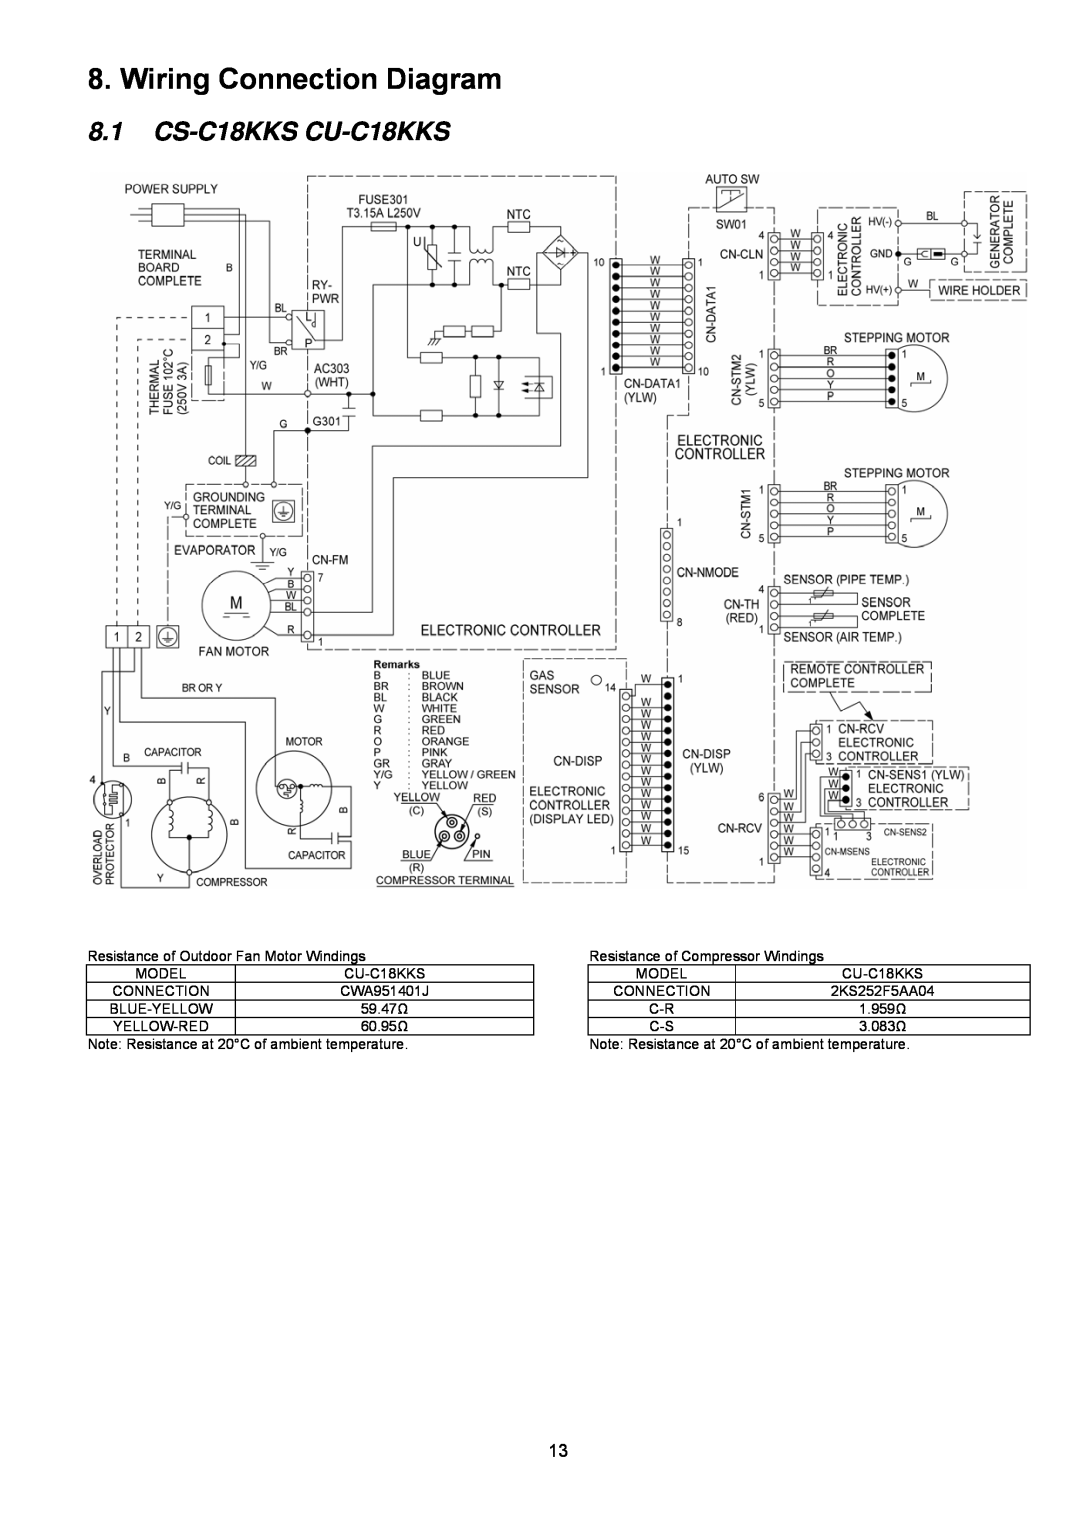 Panasonic CU-C24KKS, CS-C24KKS dimensions Wiring Connection Diagram, 8.1CS-C18KKS CU-C18KKS 